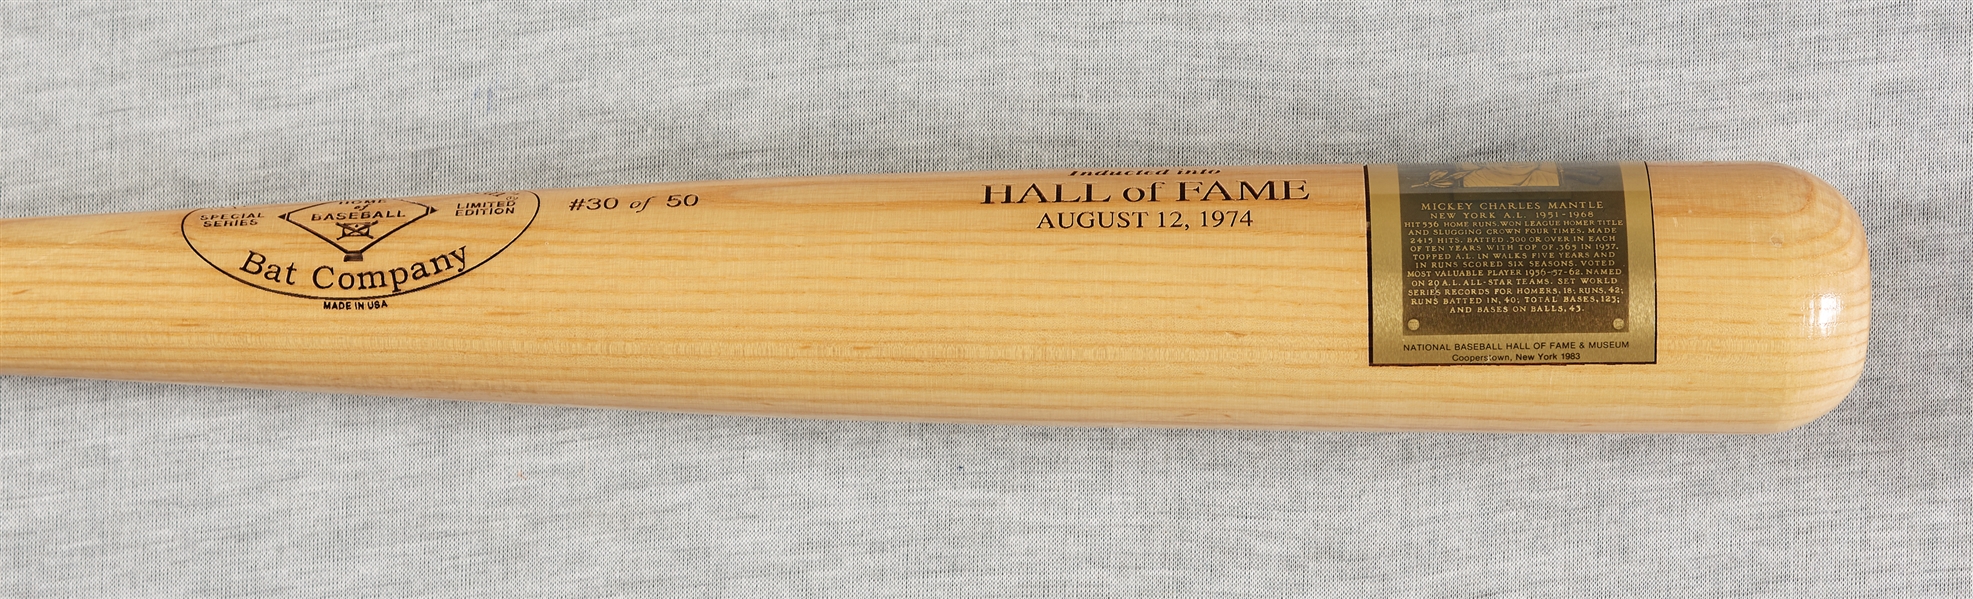 Mickey Mantle Signed Hall of Fame Plaque Bat (JSA) (PSA/DNA)